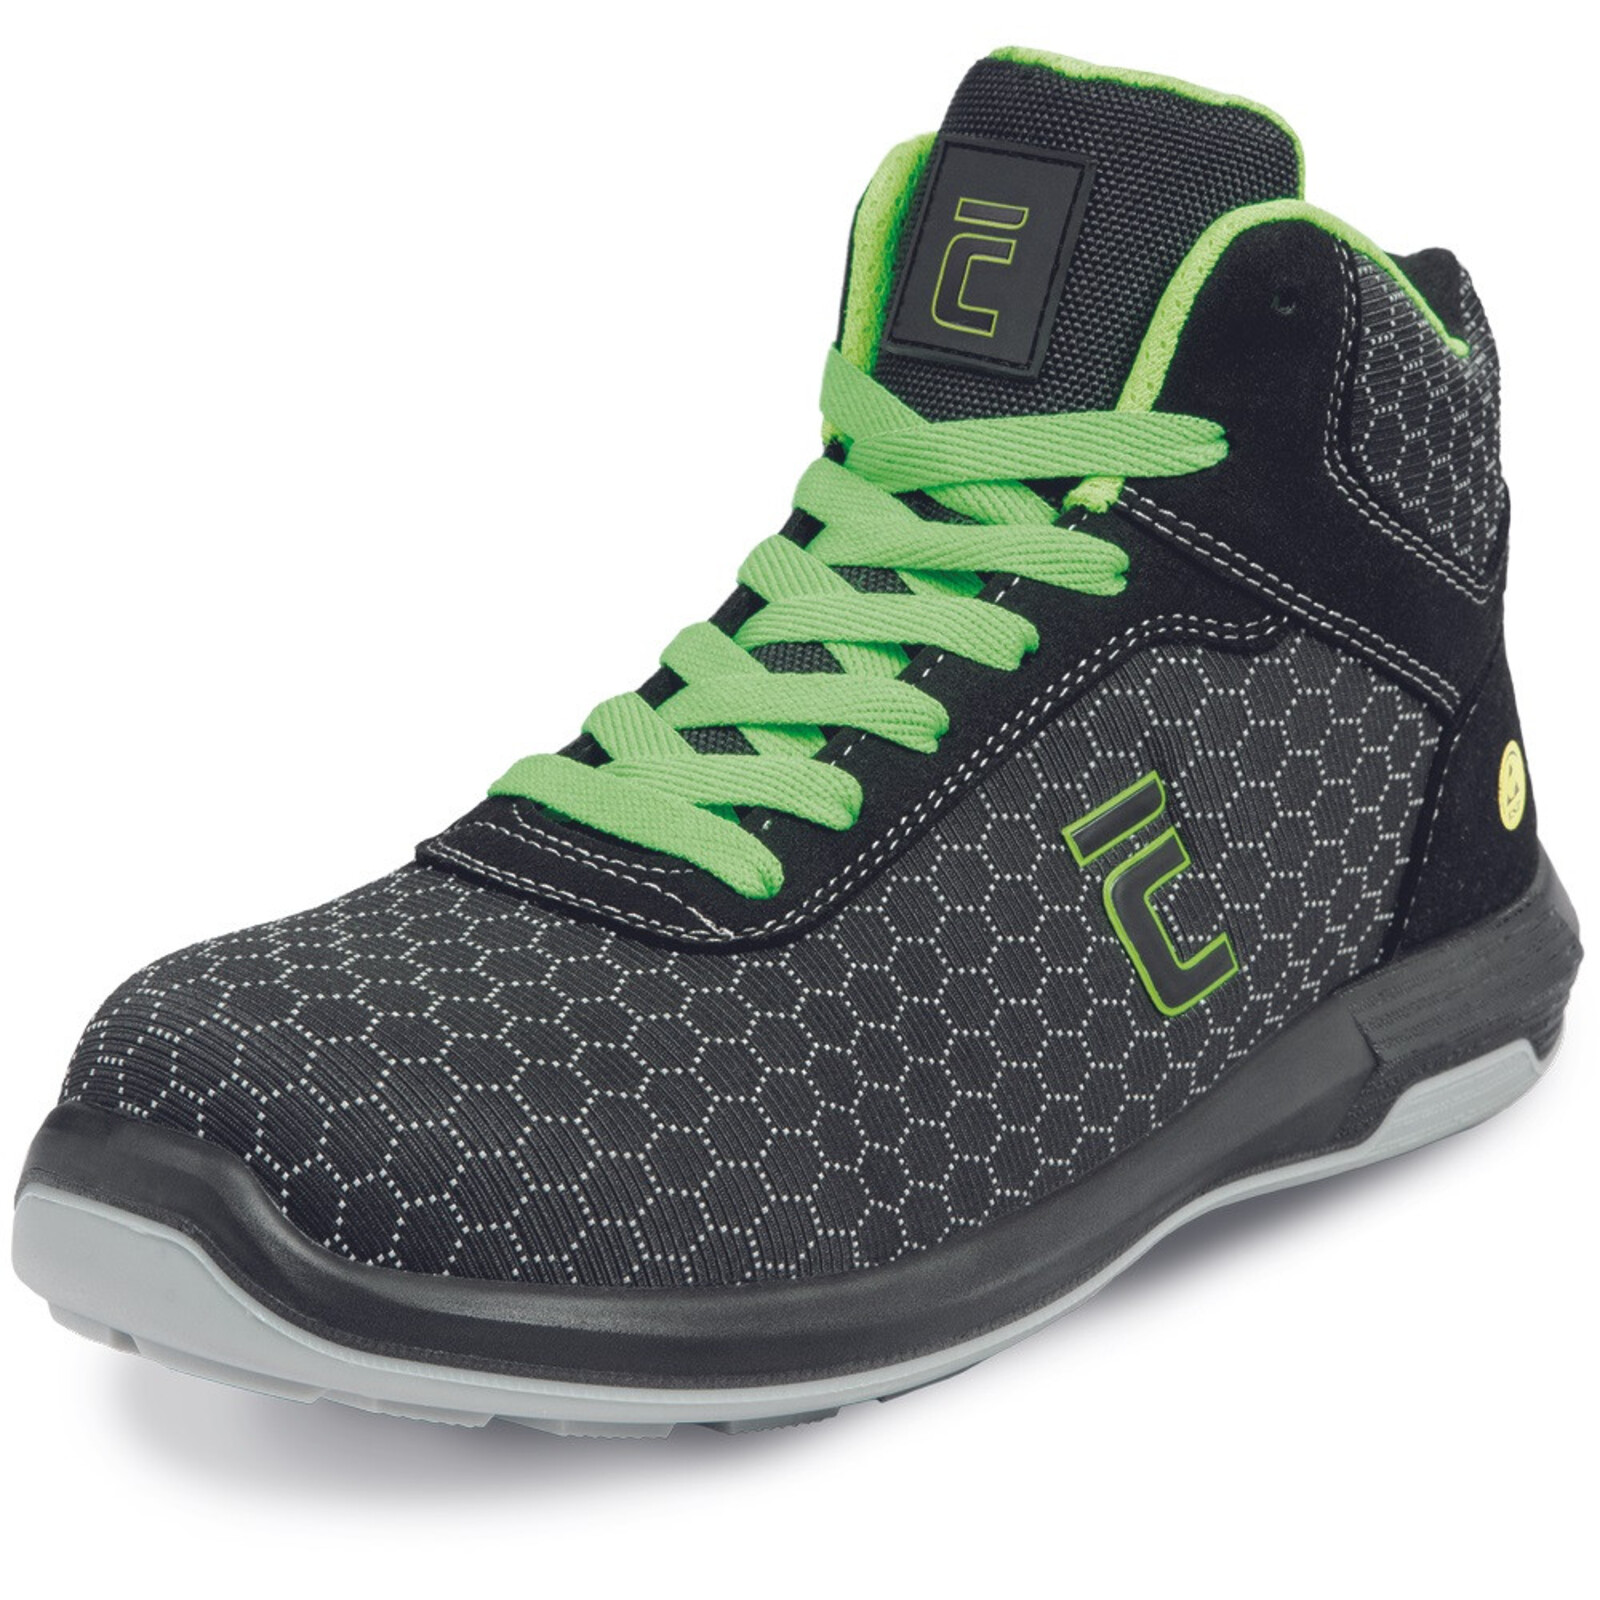 Bezpečnostná členková obuv Cerva Uttendorf MF ESD S3S SR - veľkosť: 43, farba: čierna/zelená